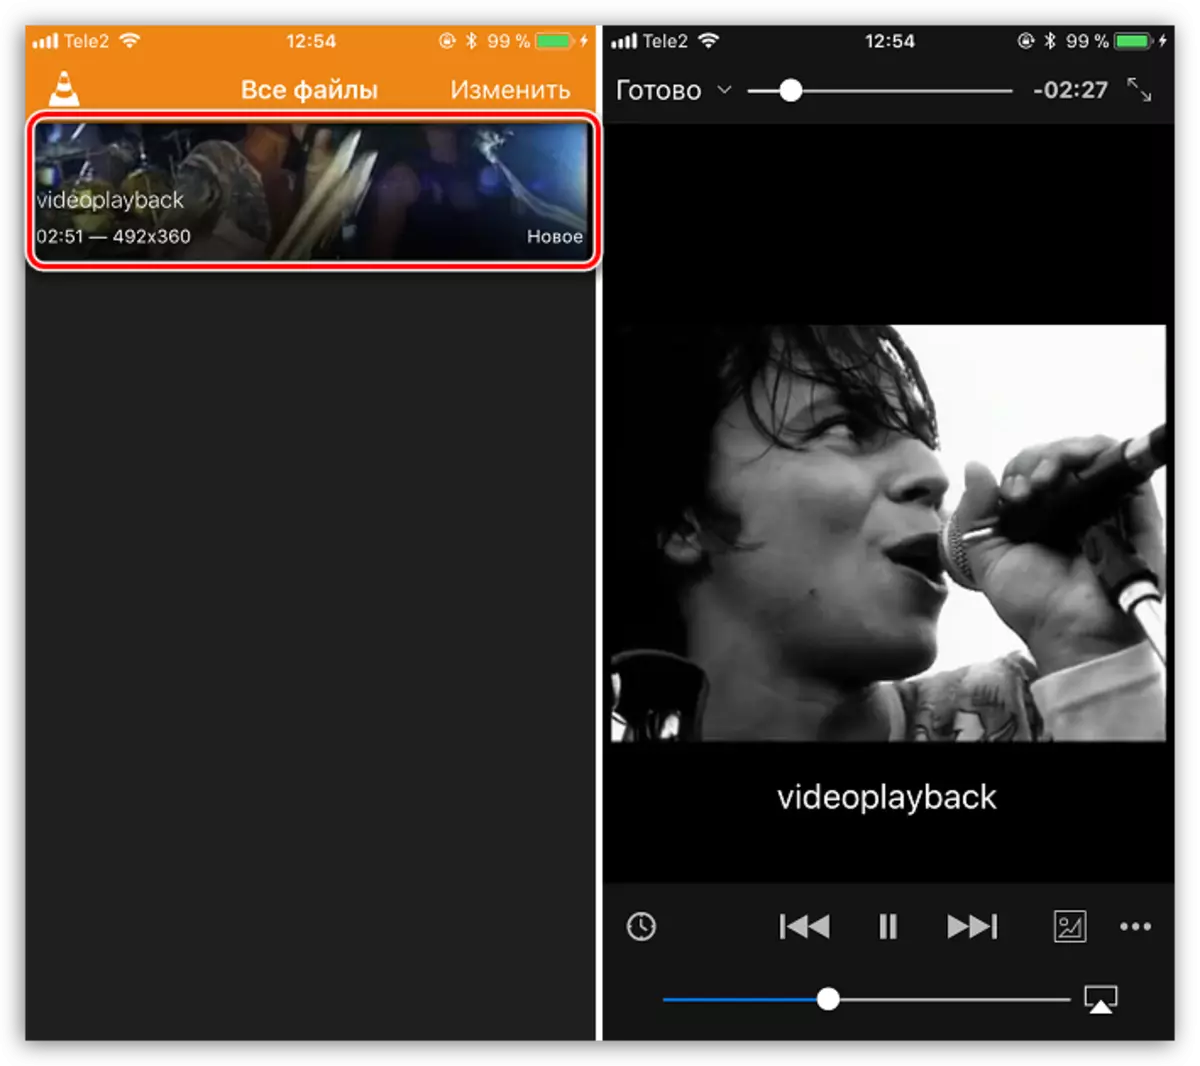 Video-reprodukto en VLC en iPhone